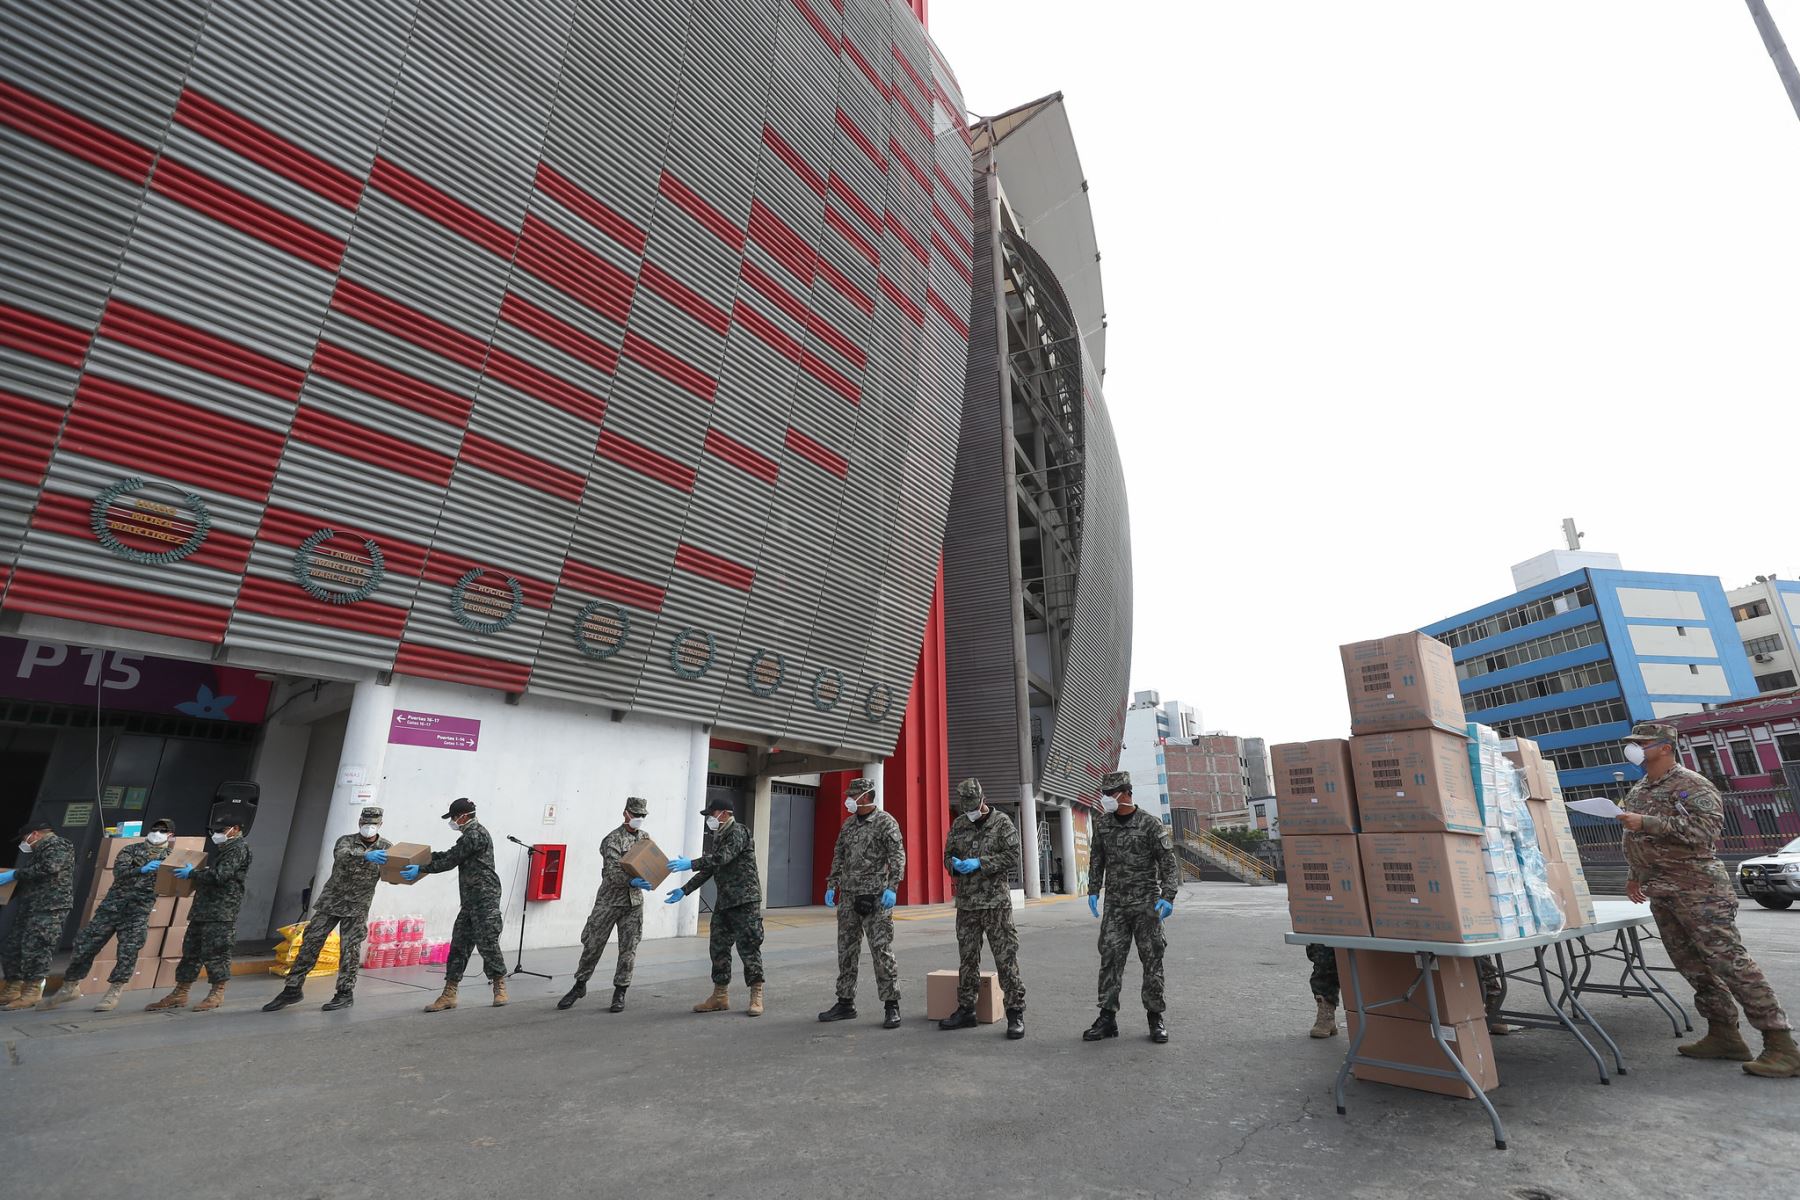 Selección peruana de fútbol donó artículos de protección a las Fuerzas Armadas. Foto: ANDINA/MINDEF